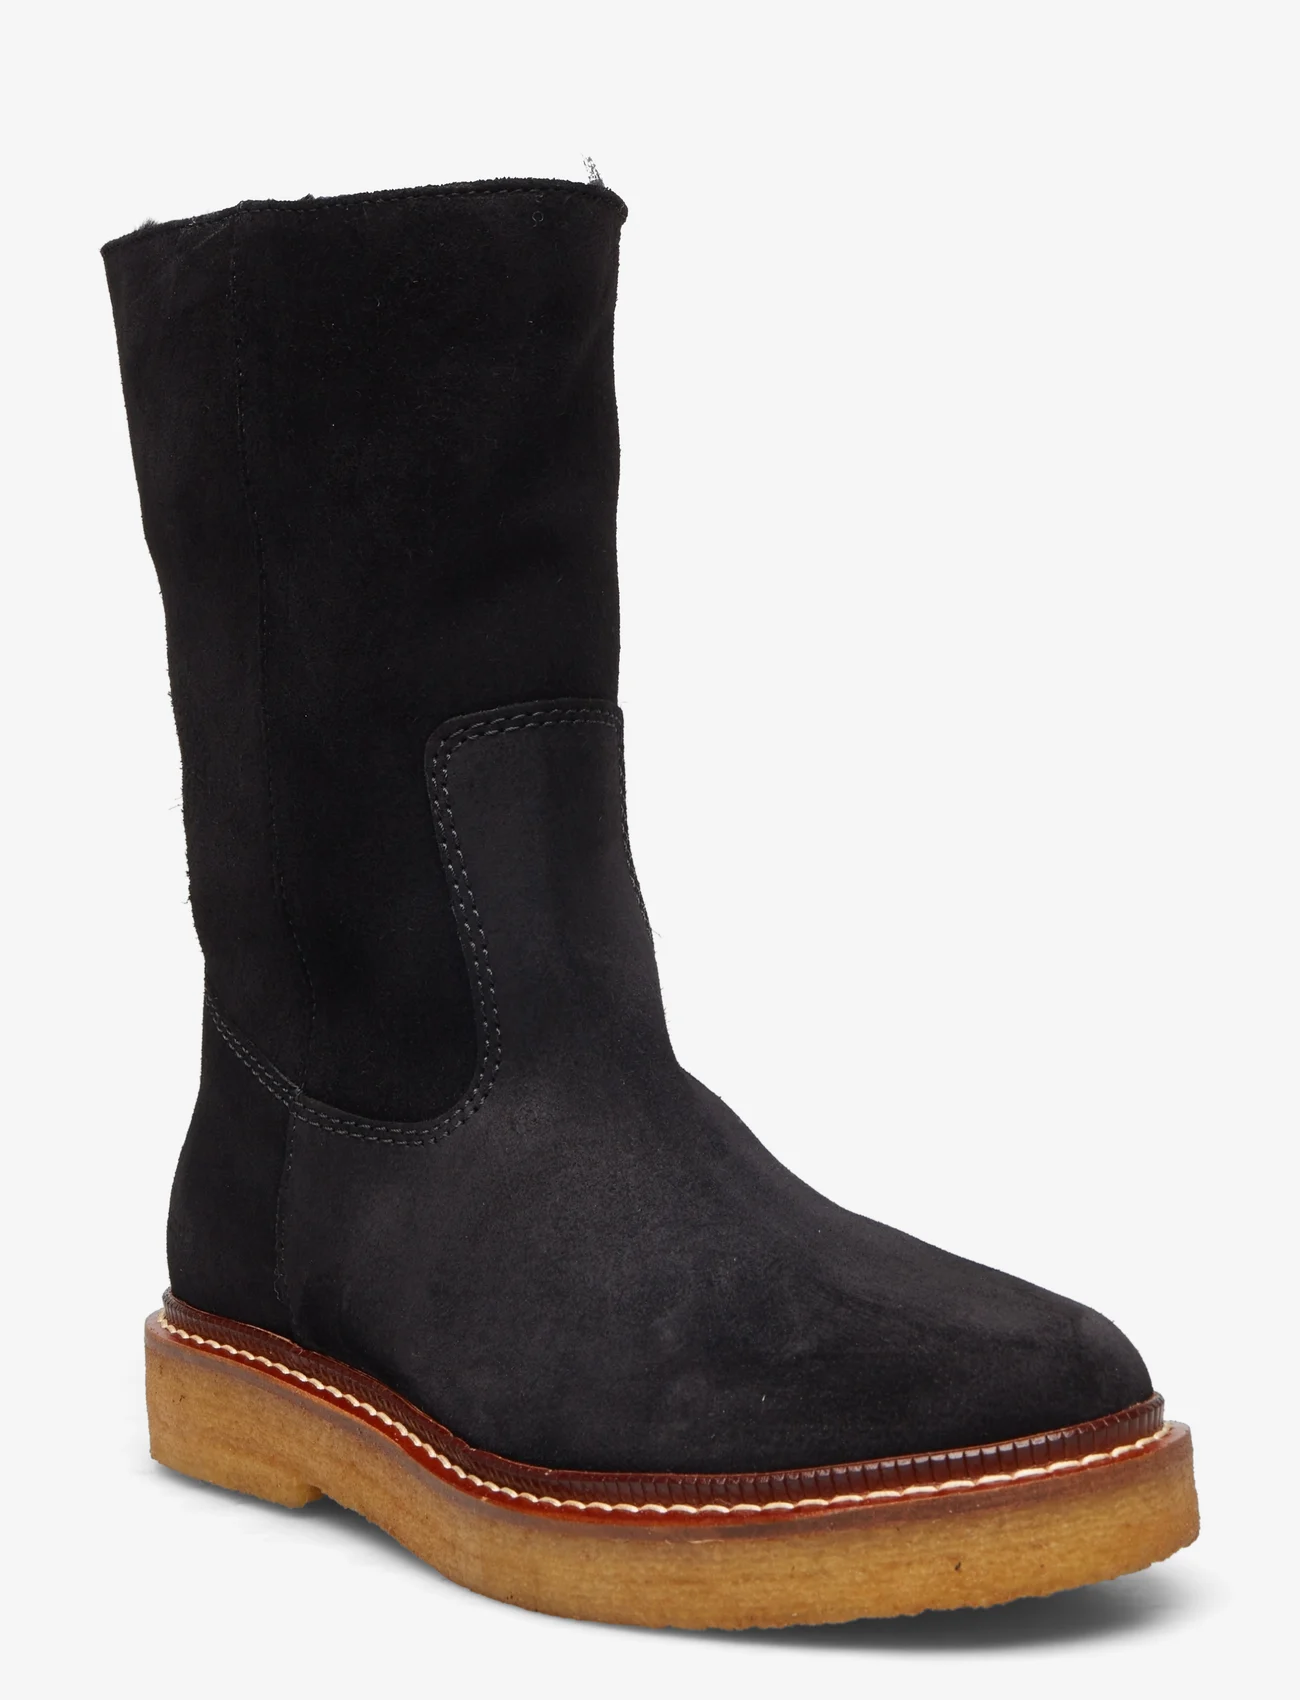 ANGULUS - Boots - flat - flache stiefeletten - 1163/2014 black/black lamb woo - 0